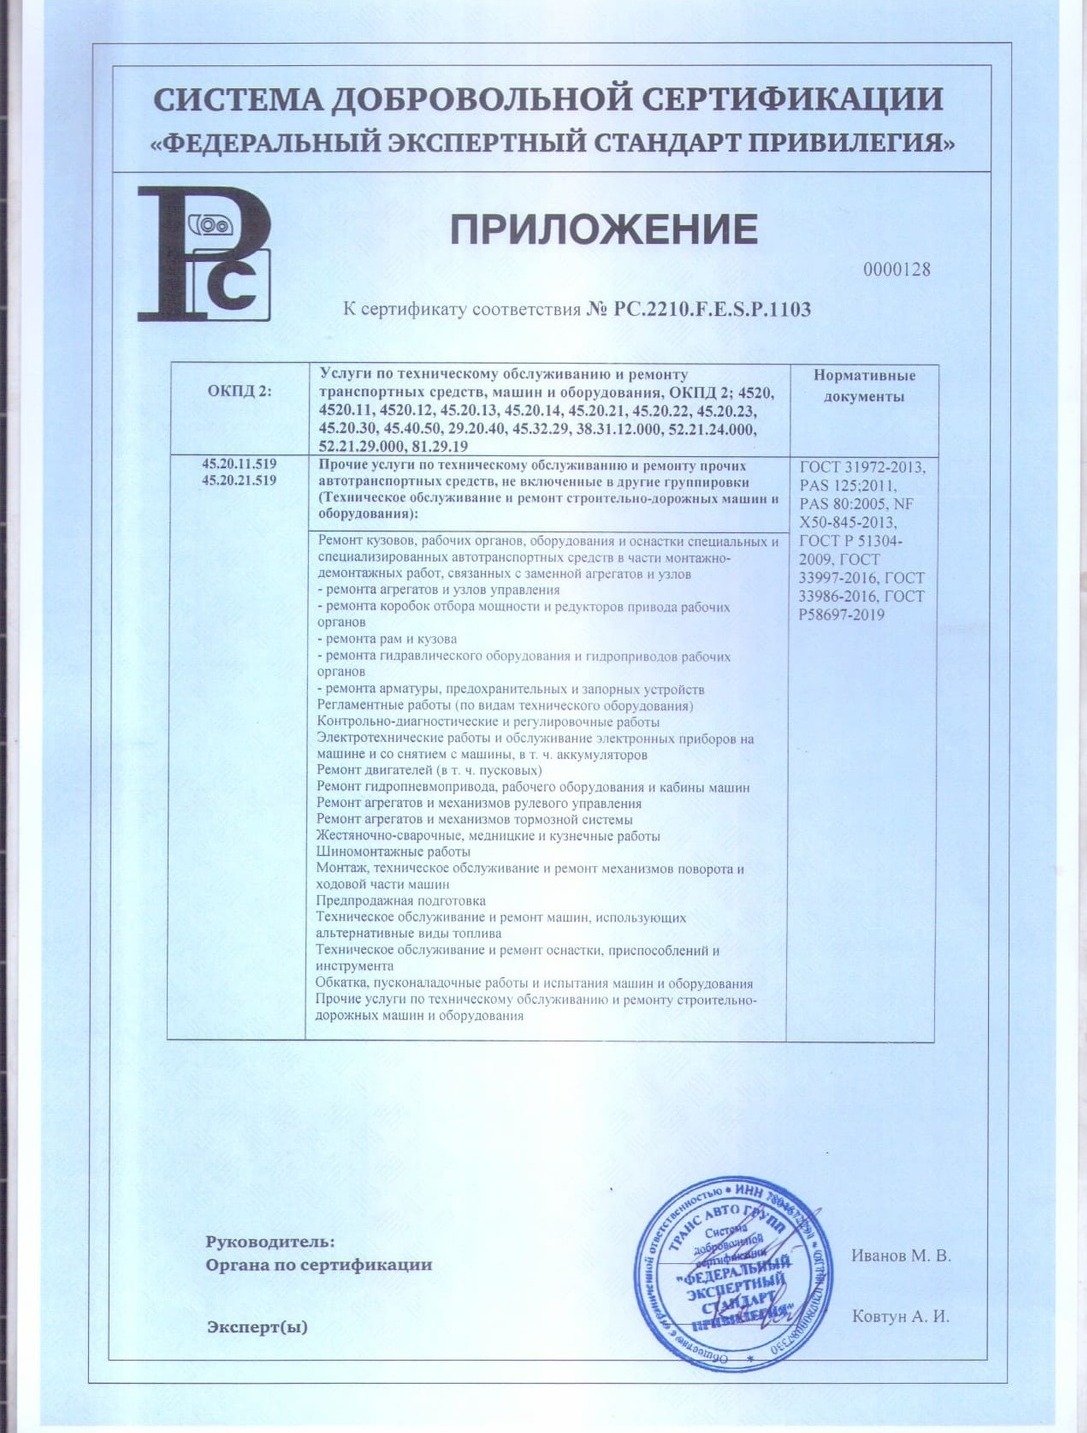 Приложение № 5 к сертификату на ремонт рефов